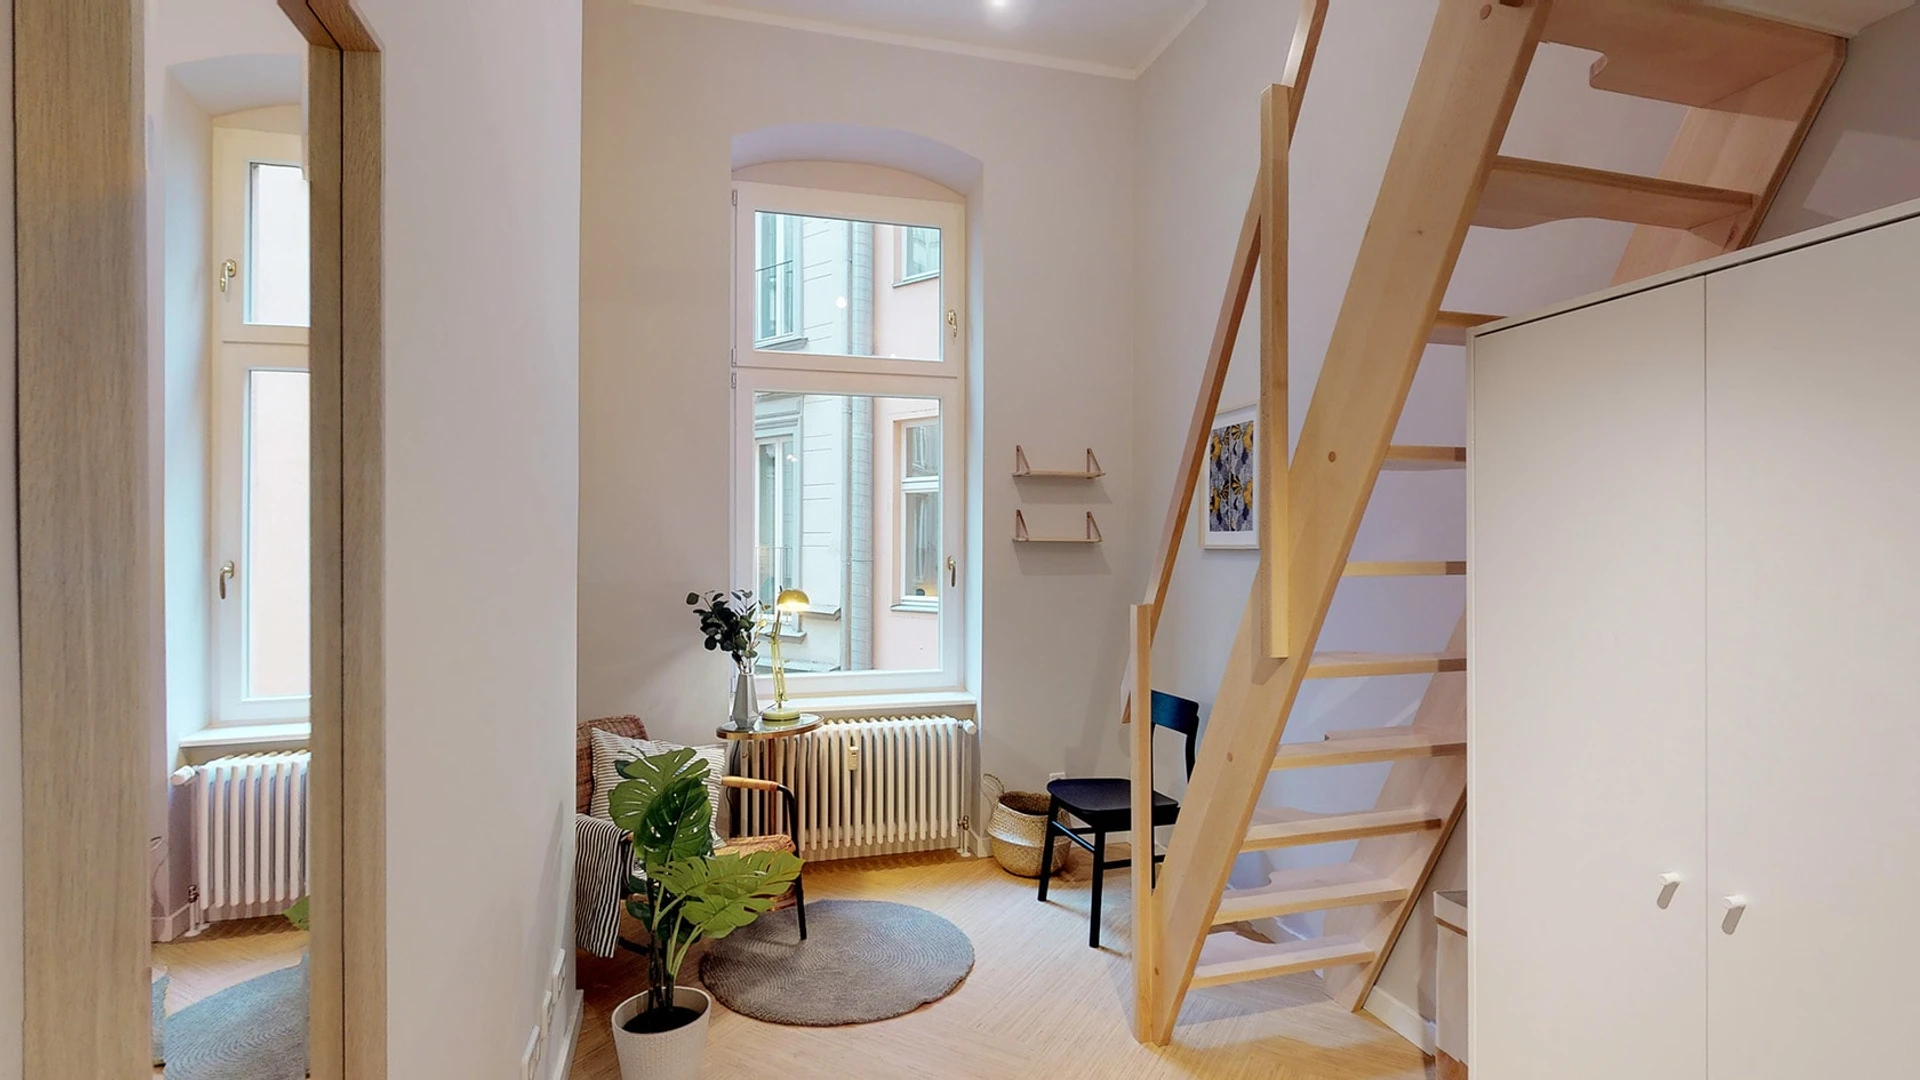 Very bright studio for rent in berlin